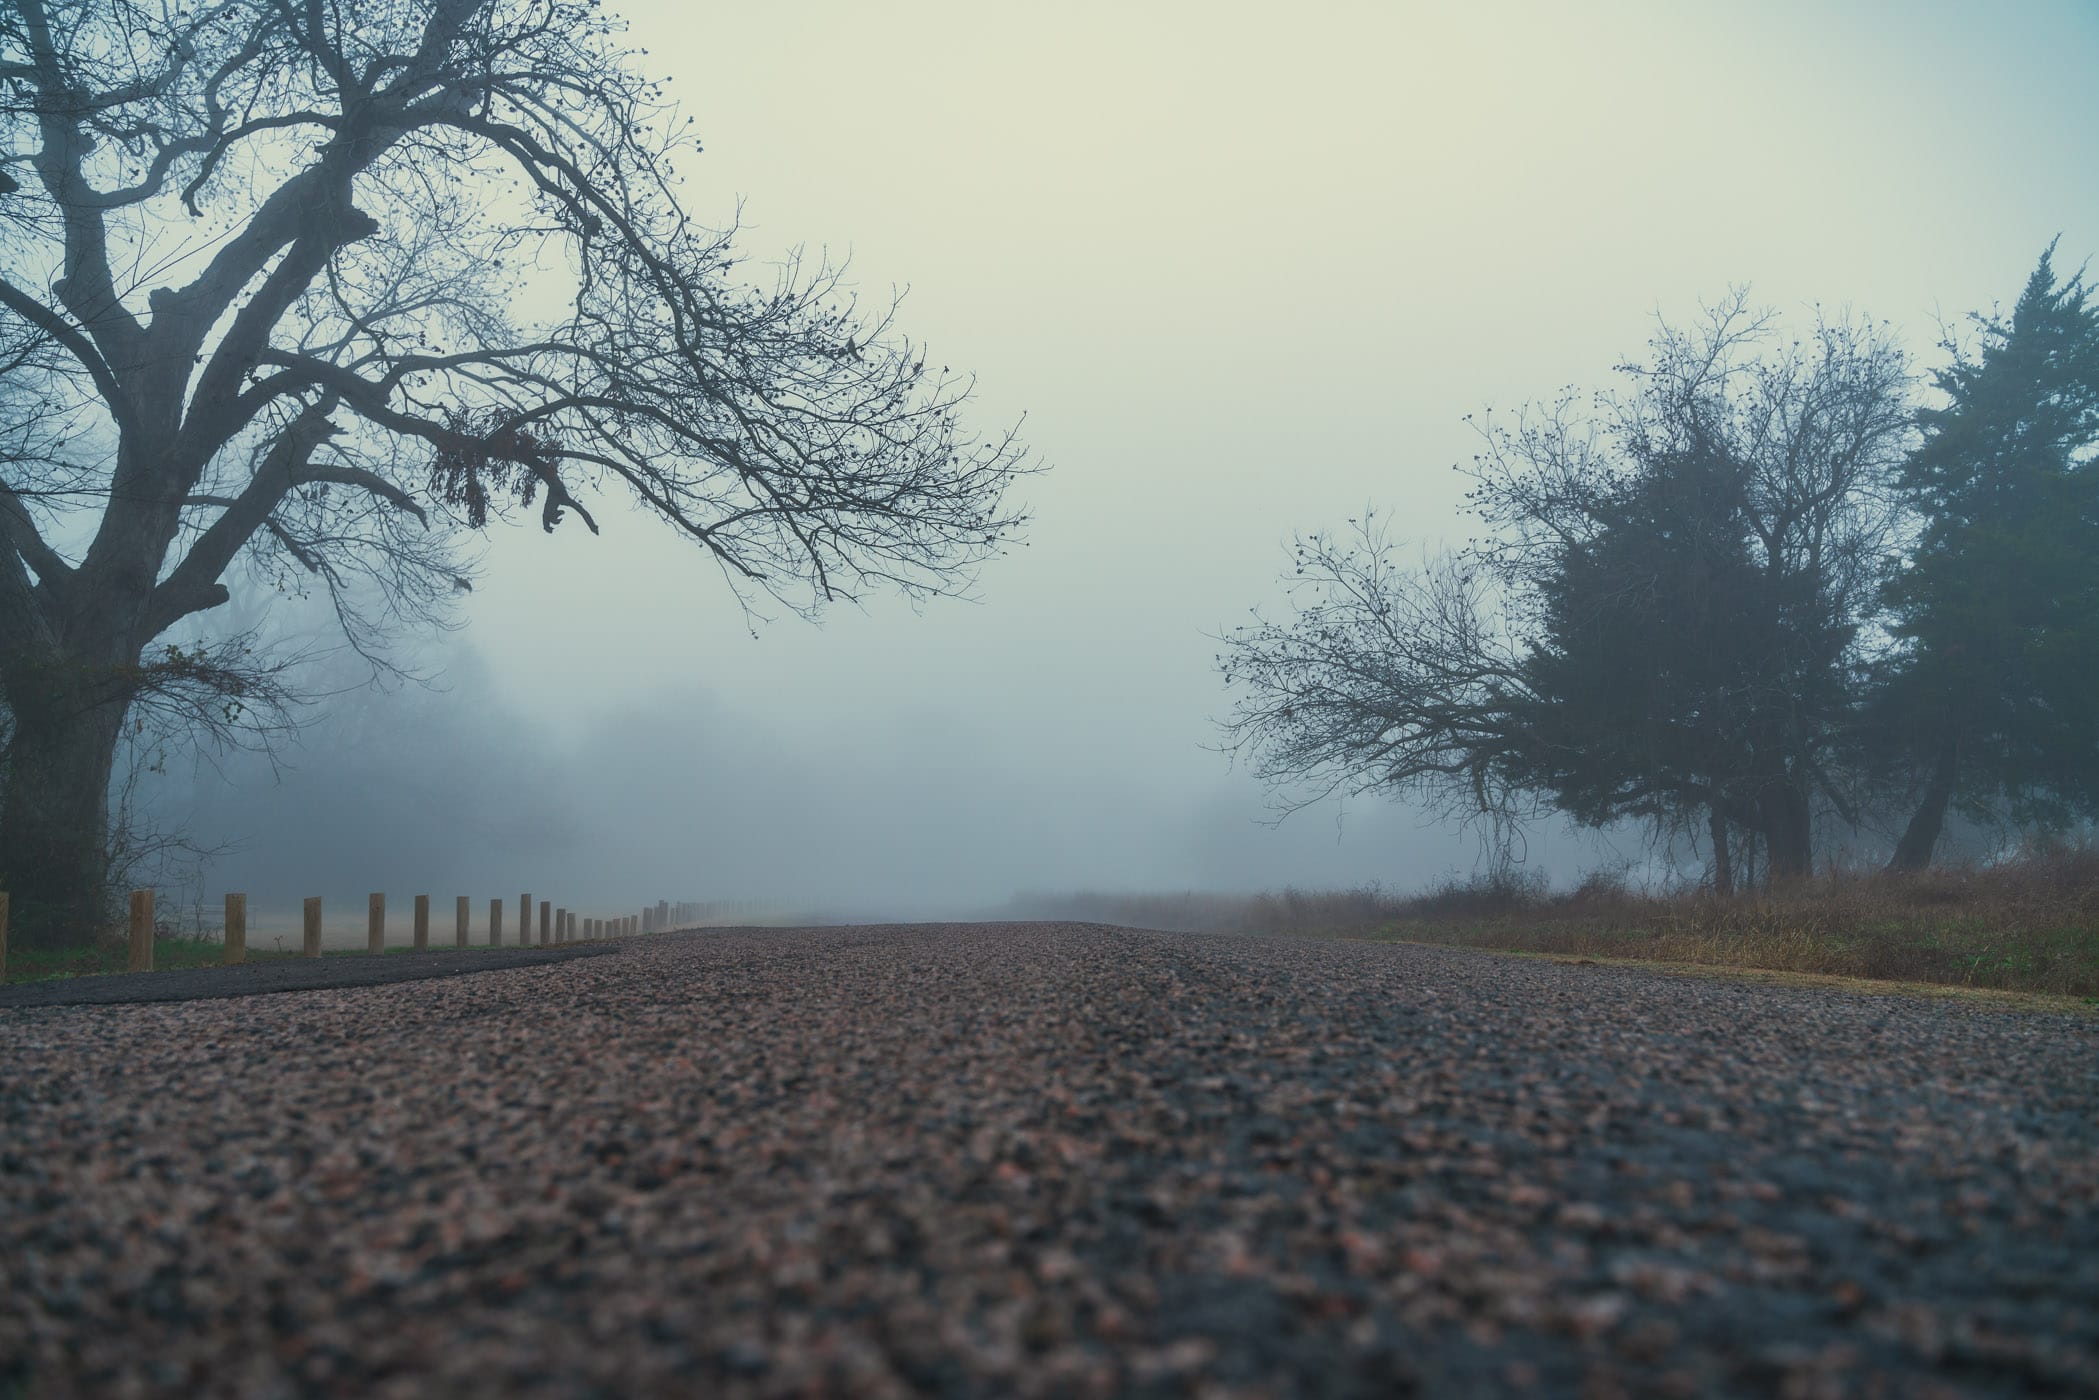 A foggy morning at McKinney, Texas' Erwin Park.